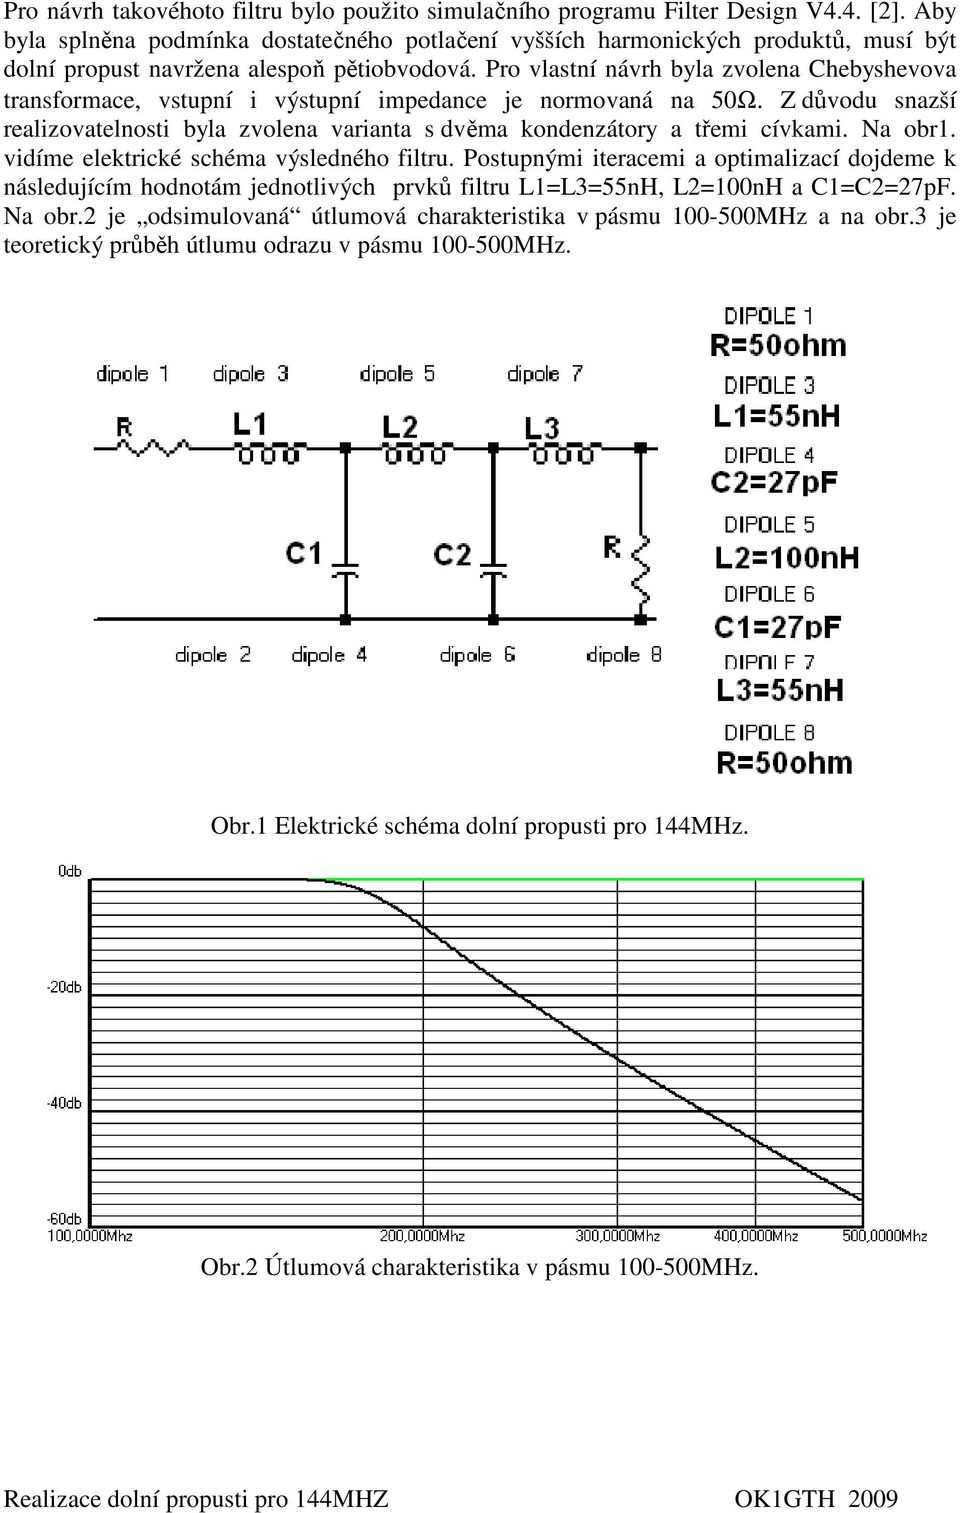 Pro vlastní návrh byla zvolena Chebyshevova transformace, vstupní i výstupní impedance je normovaná na 50Ω.